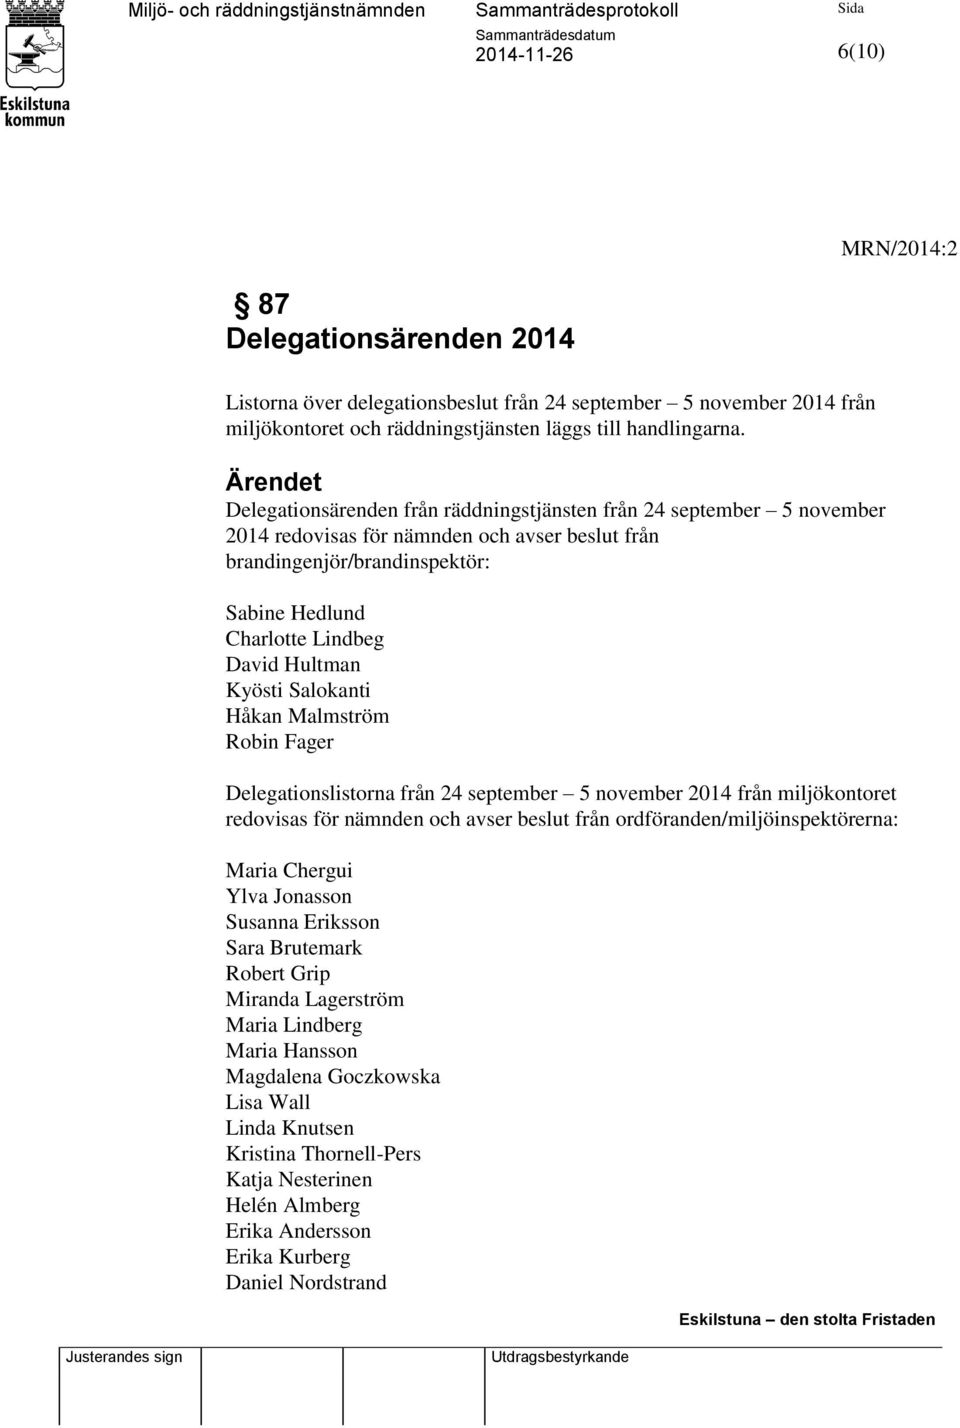 Hultman Kyösti Salokanti Håkan Malmström Robin Fager Delegationslistorna från 24 september 5 november 2014 från miljökontoret redovisas för nämnden och avser beslut från